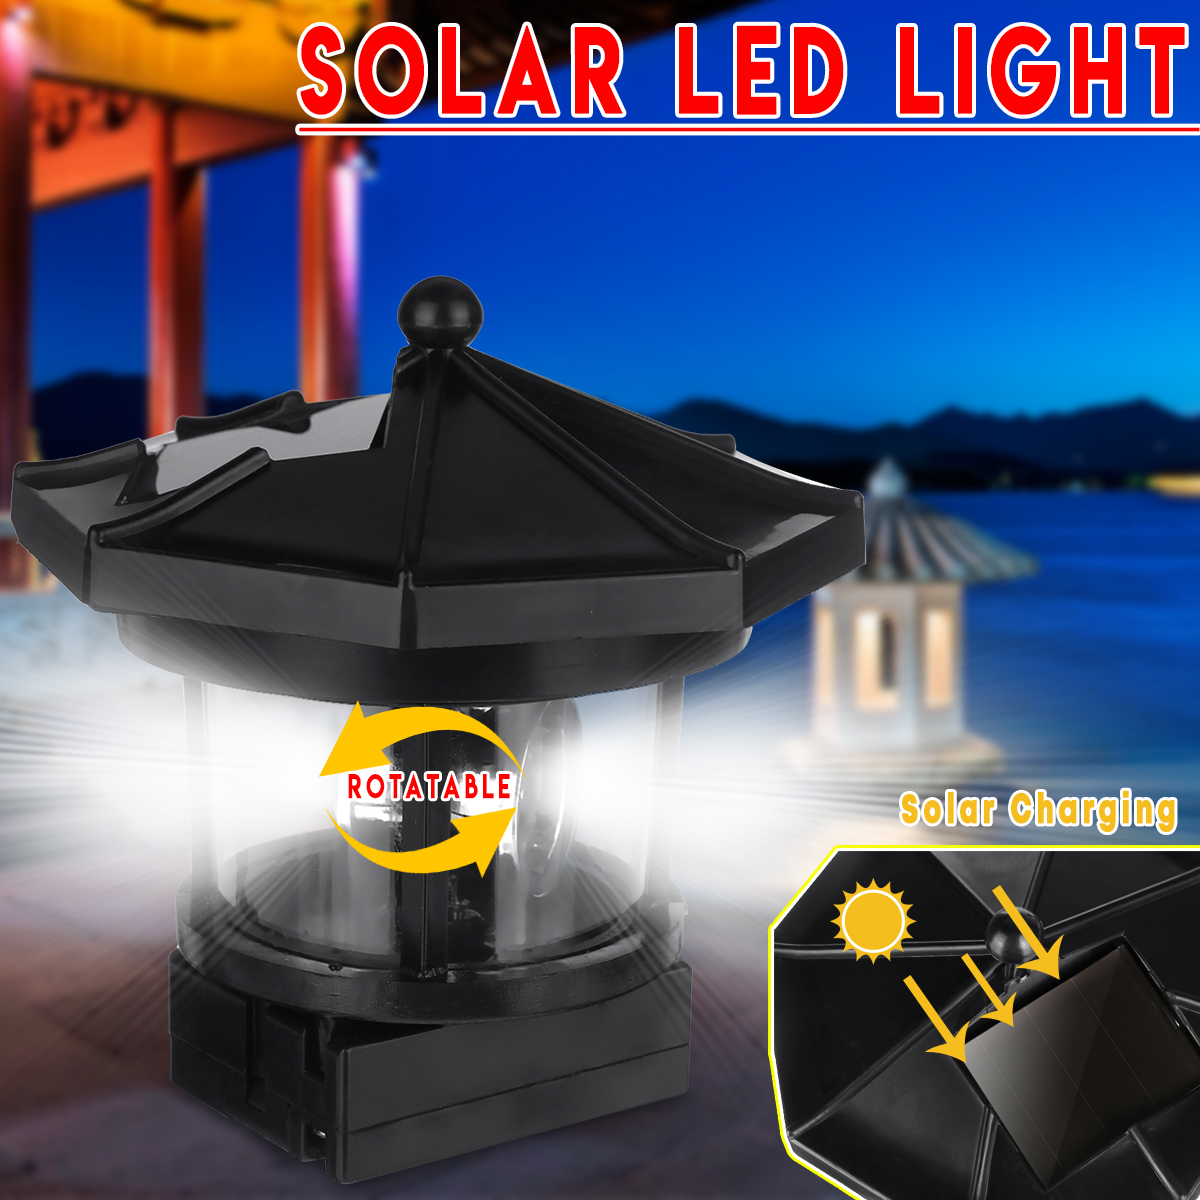 Solar-Powered-Lighthouse-LED-Rotating-Solar-Light-Outdoor-Garden-Lighting-Lamp-Decor-1567223-1